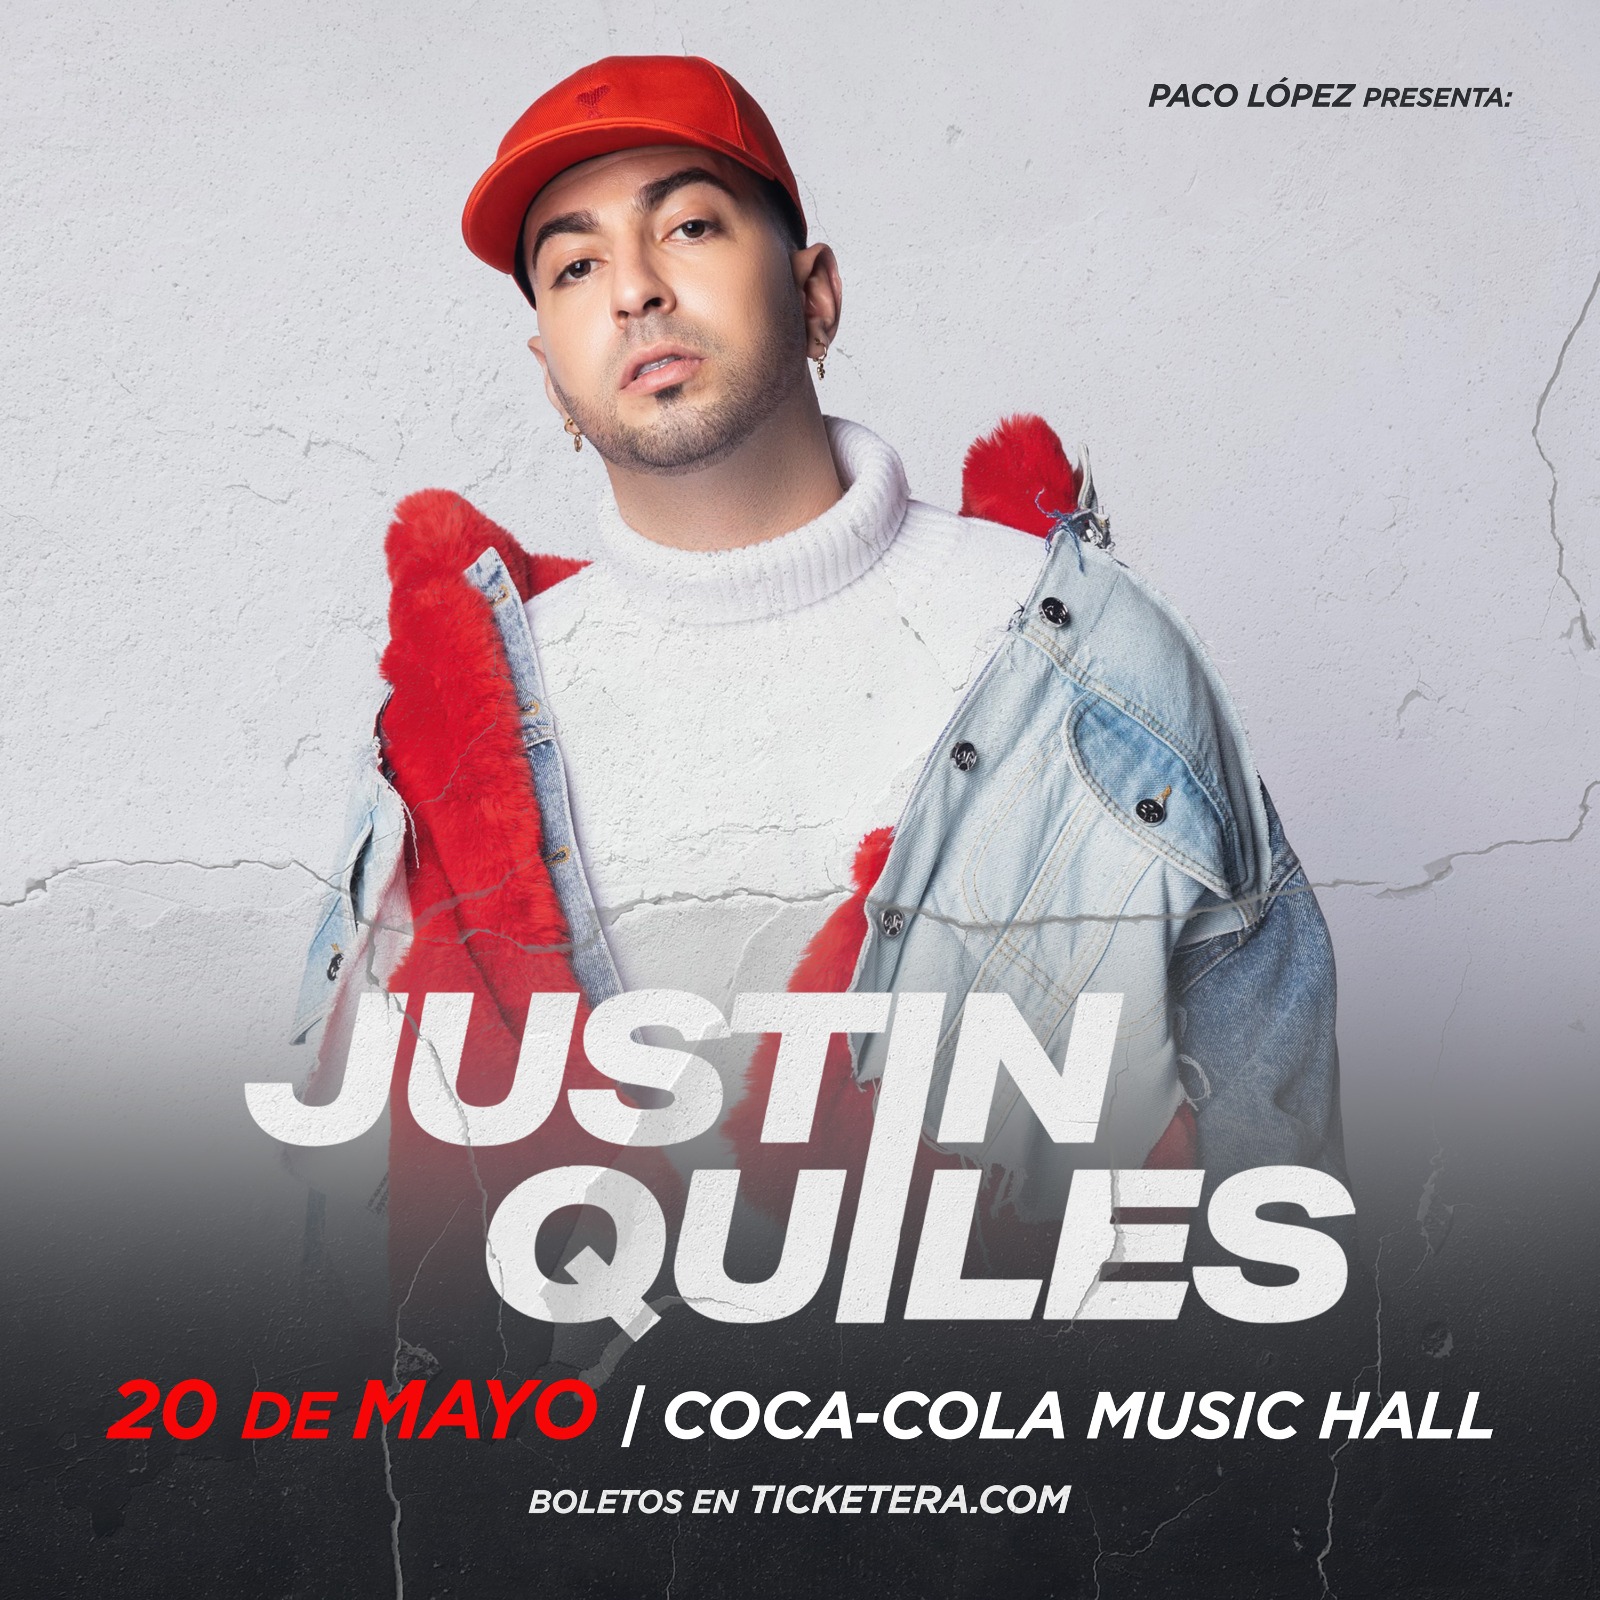 JUSTIN QUILES anuncia concierto en Puerto Rico